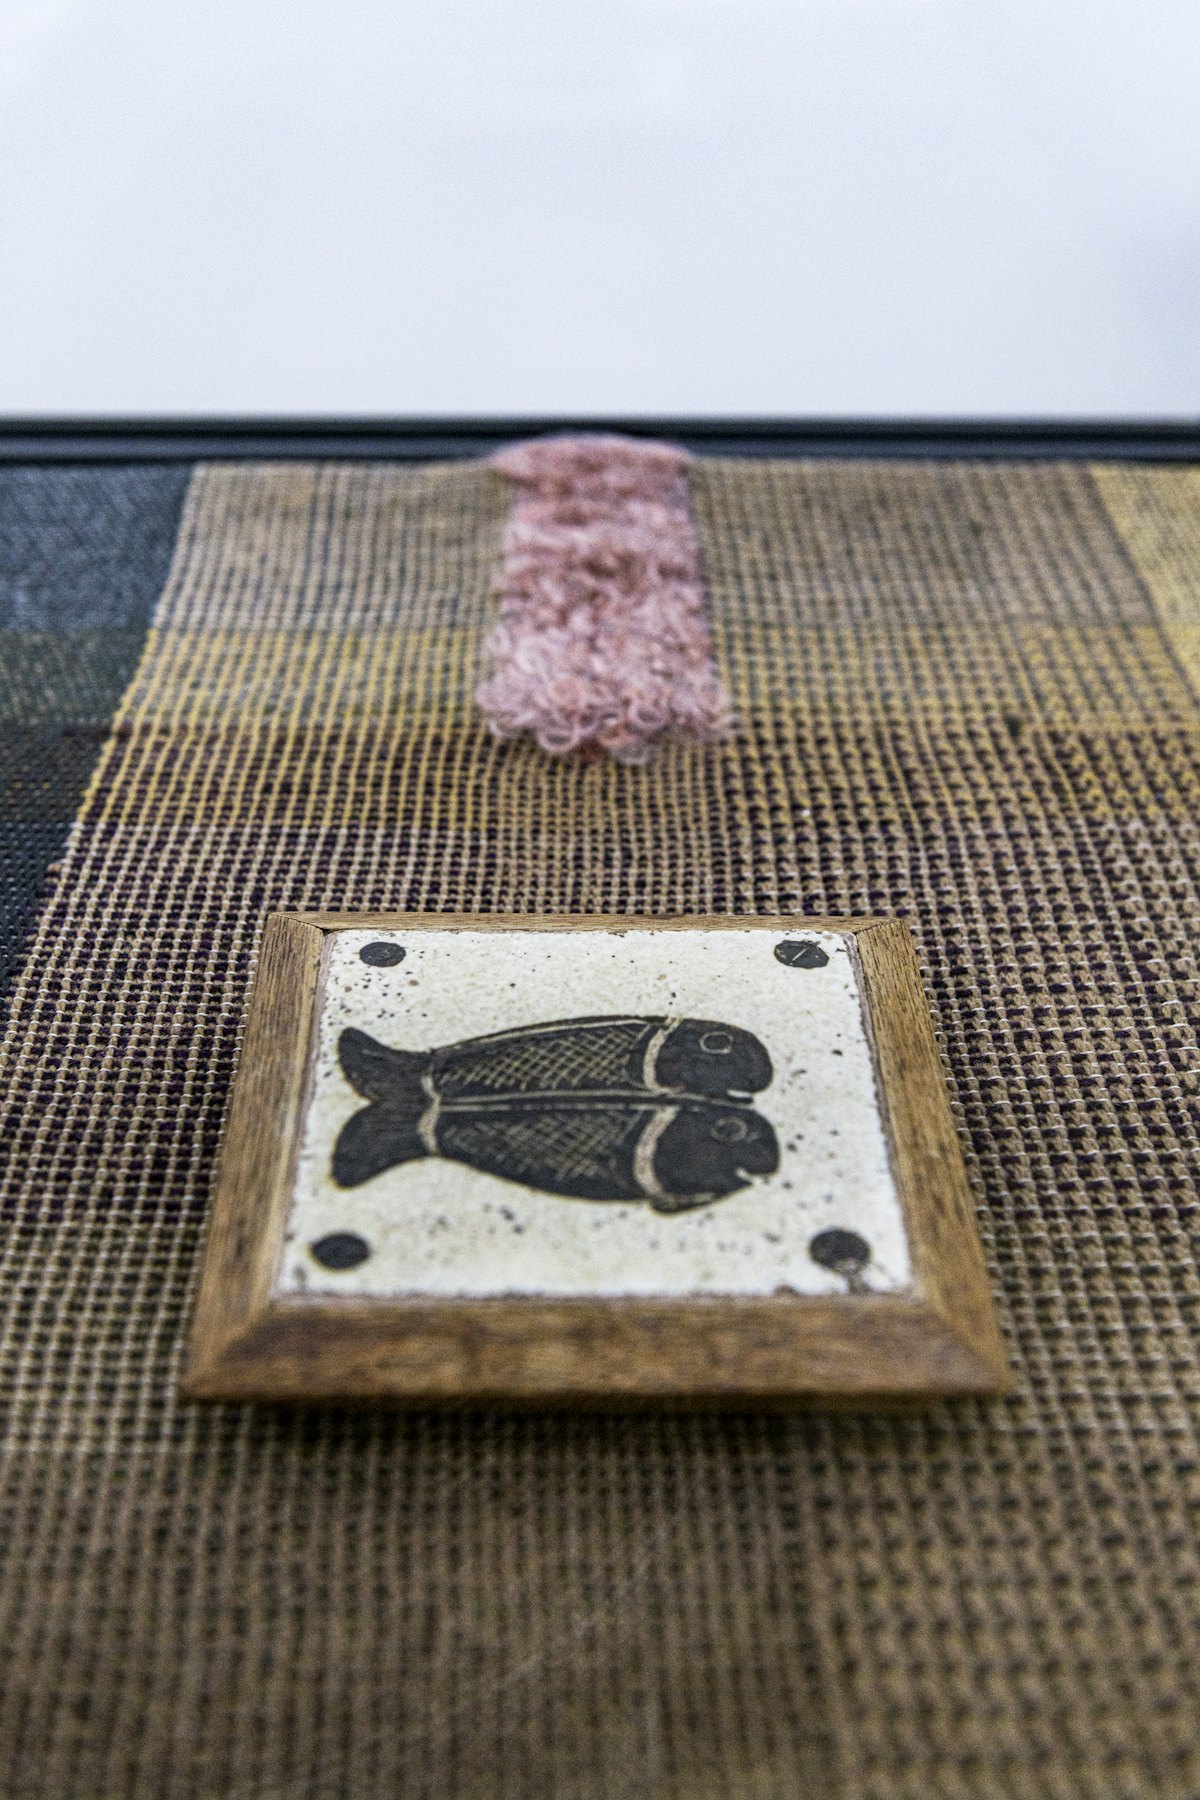 Un azulejo con peces de Bernard Leach expuesto sobre un paño tejido por el artista Travis Josef Meinolf, en la instalación “Kai Althoff acompaña a Bernard Leach” en la galería londinense Whitechapel del 7 de octubre de 2020 al 10 de enero de 2021. Fotografía: Polly Eltes